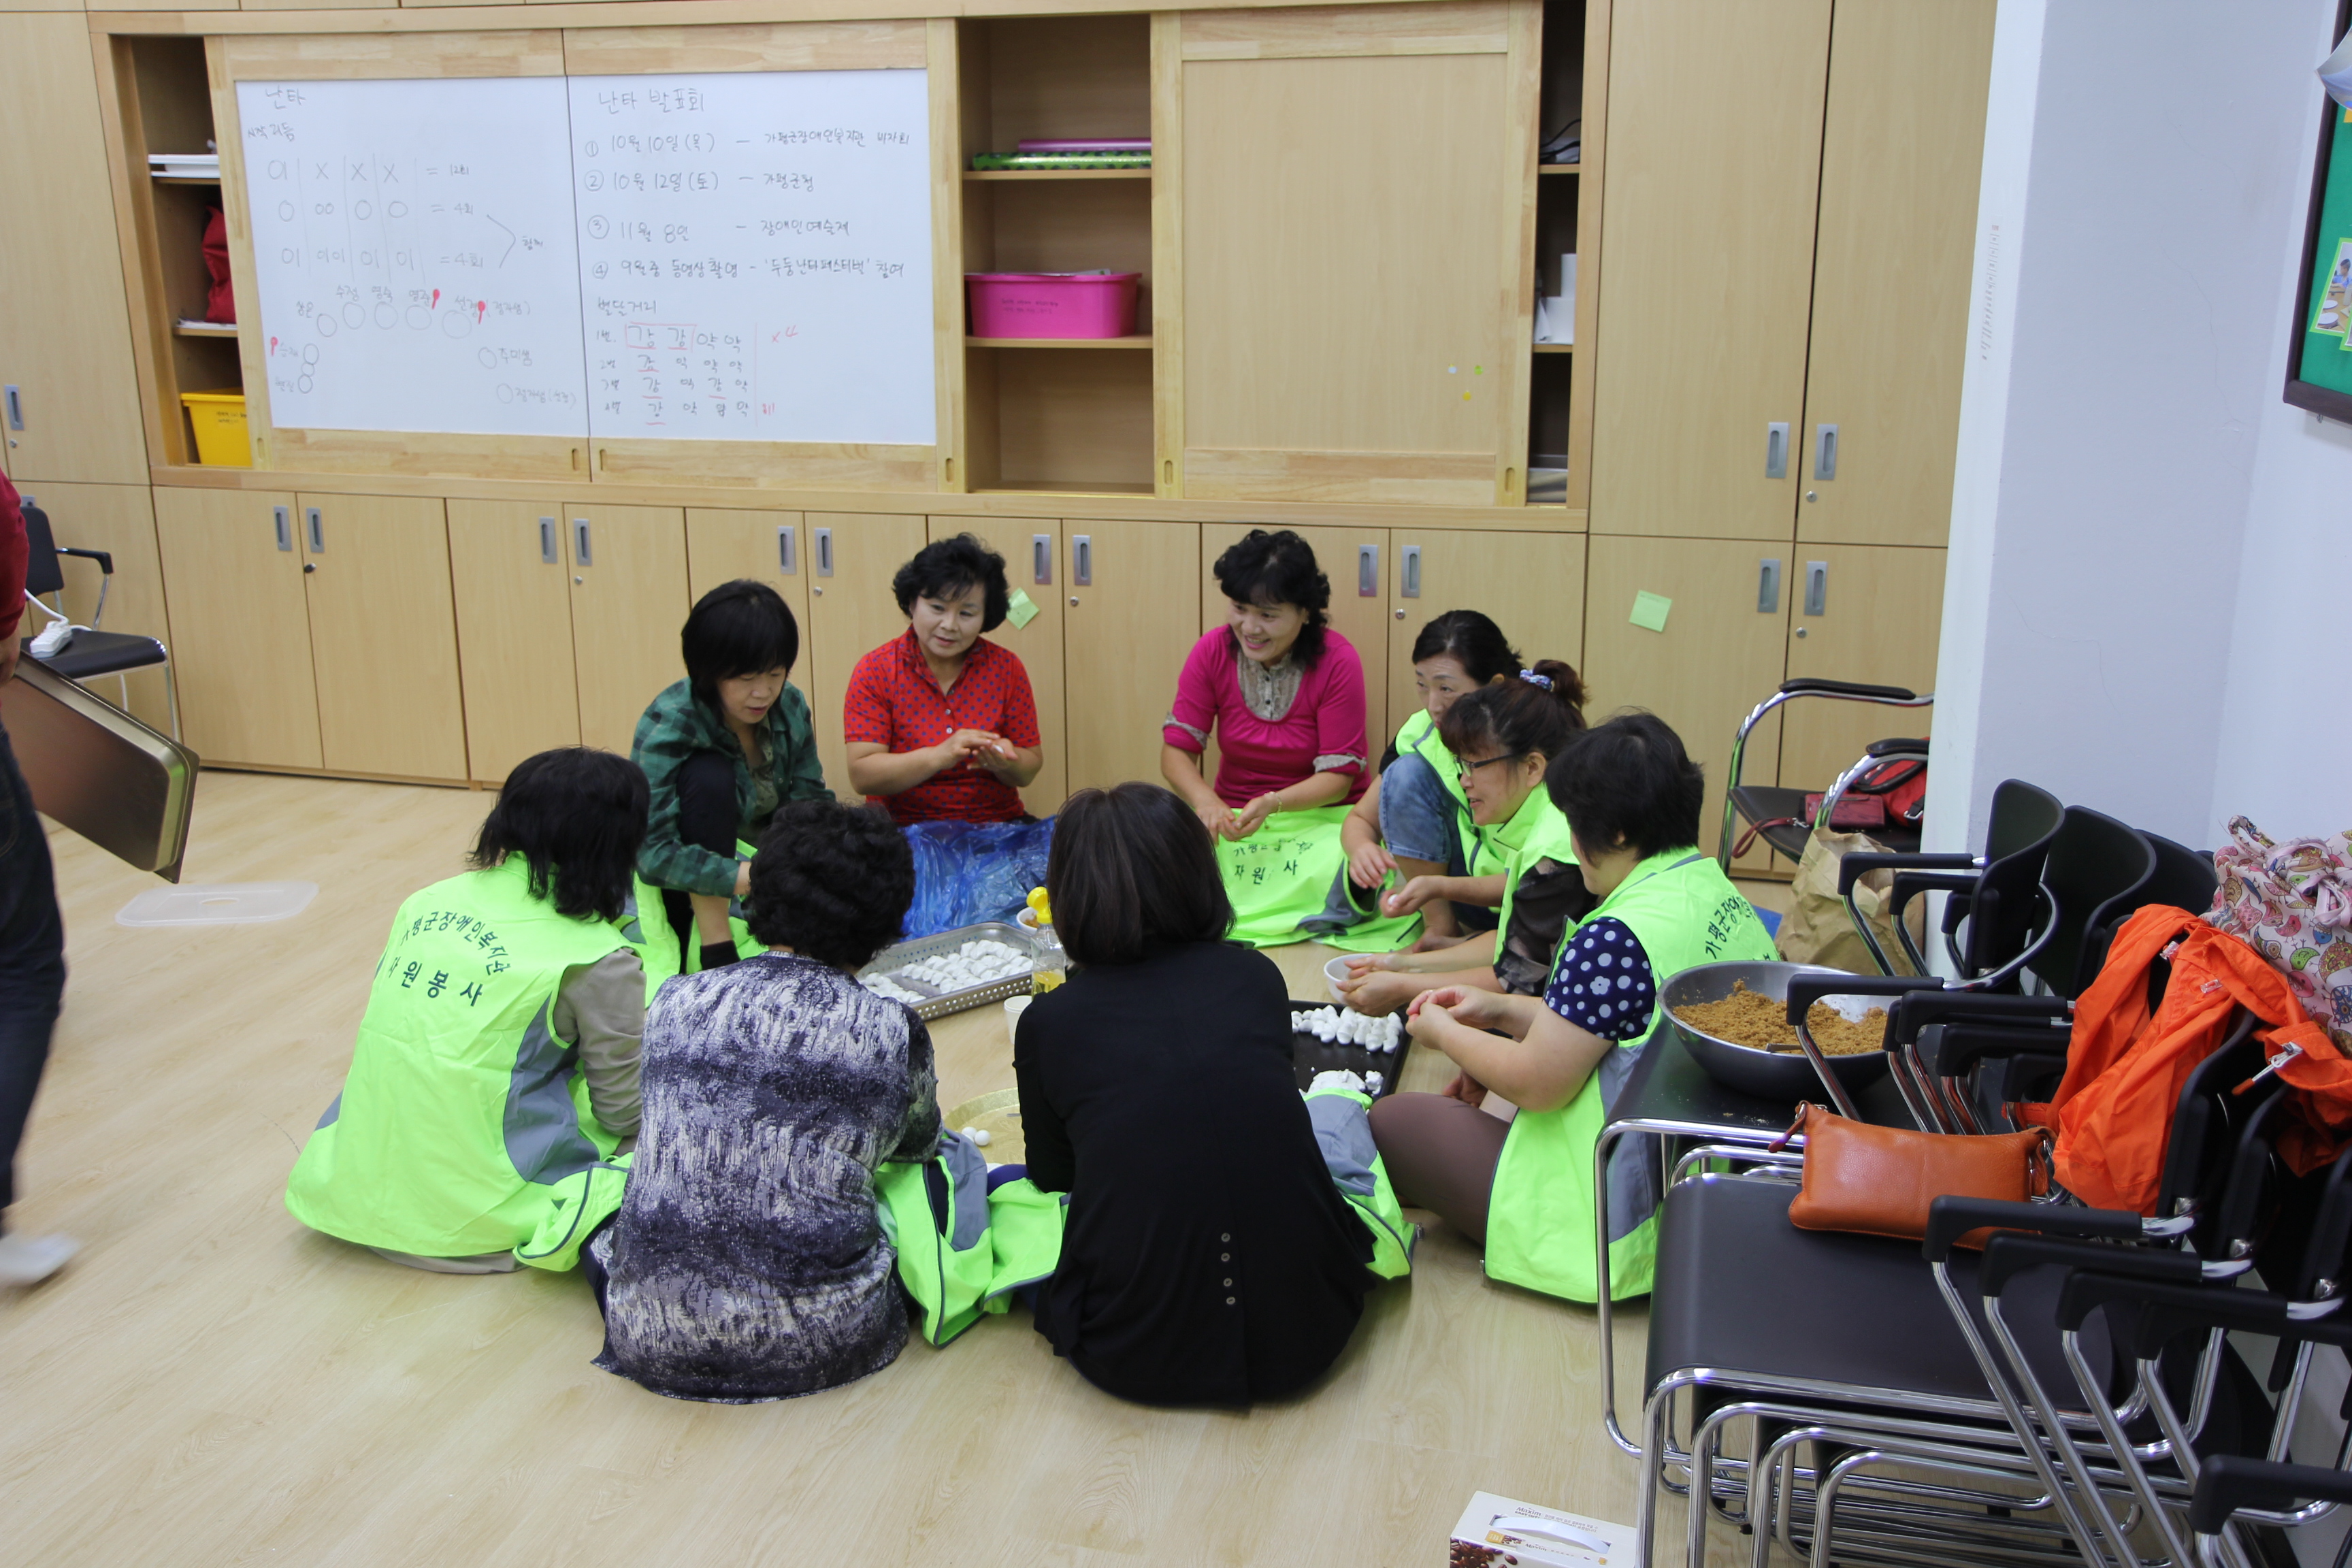 해마음교실에서 자원봉사자들이 송편을 빚고 있는 모습